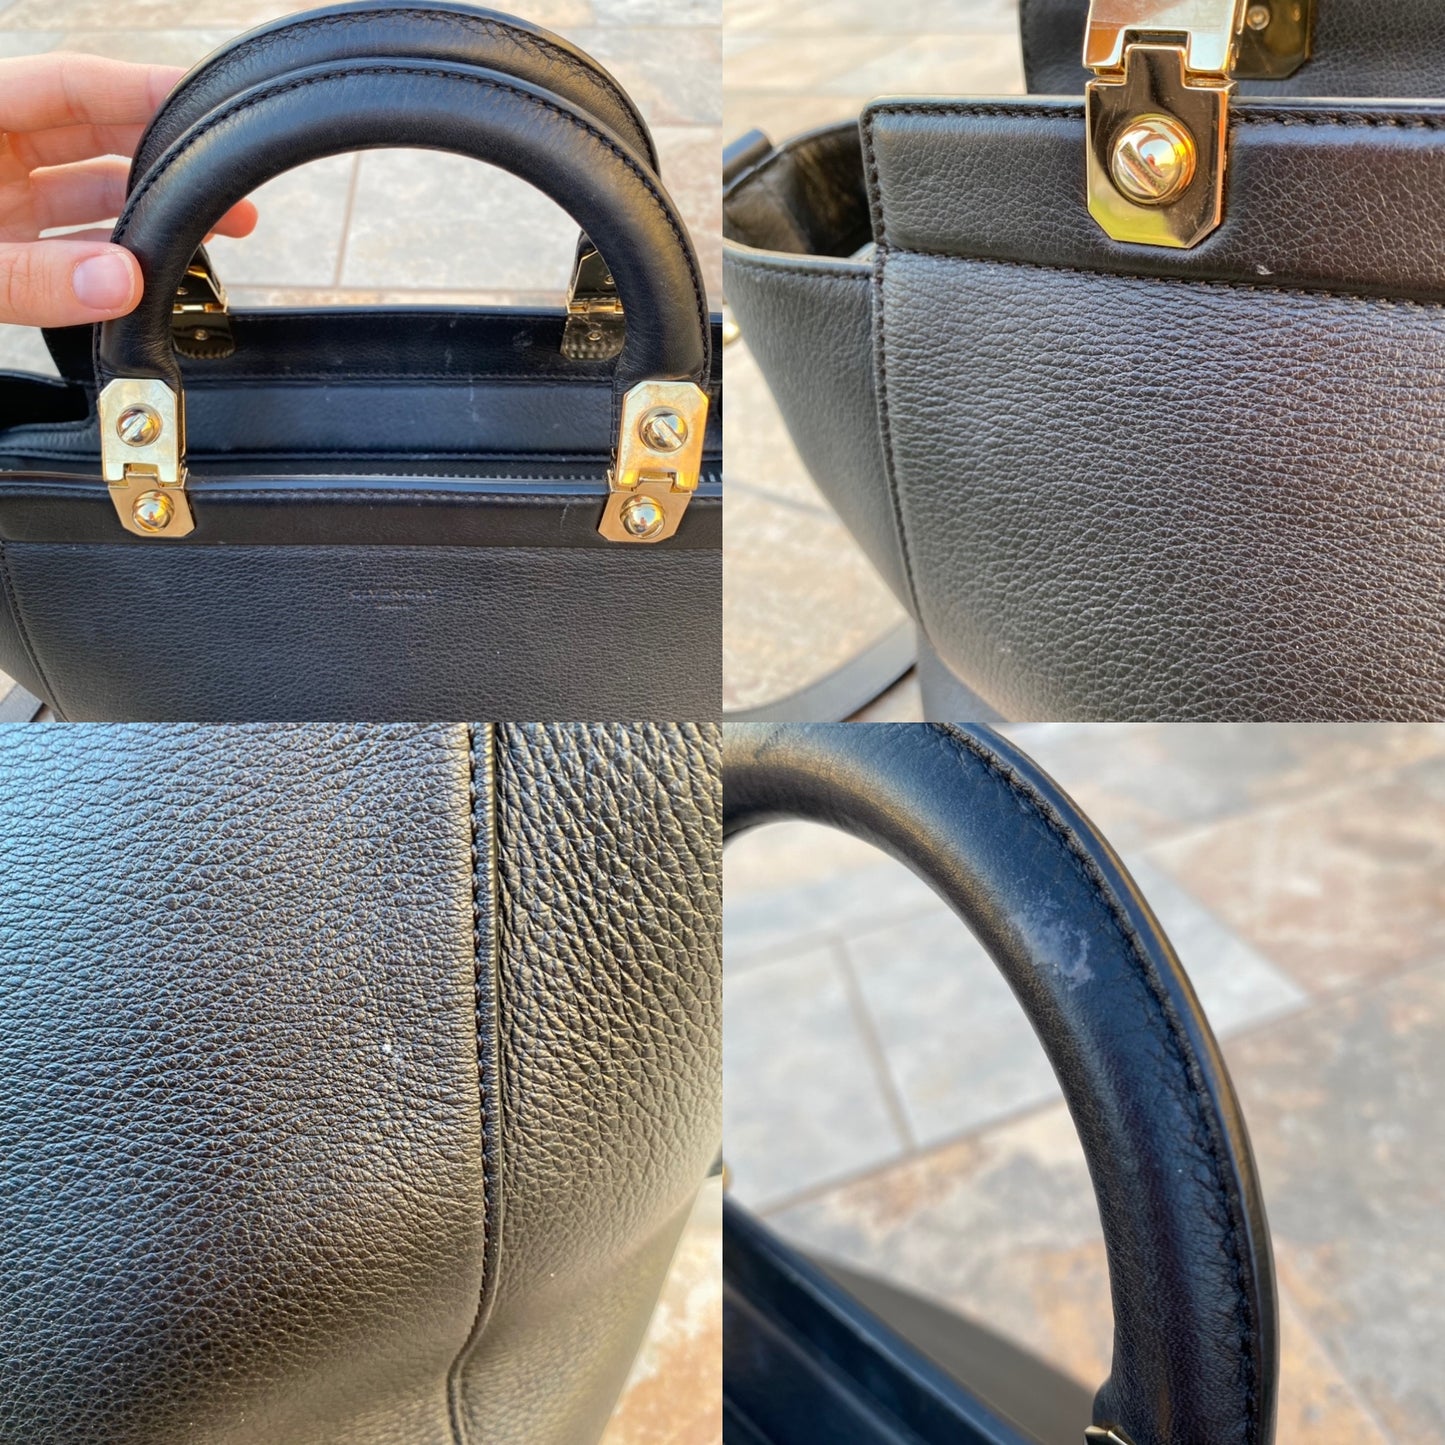 Givenchy HDG Calf Leather Shoulder Bag